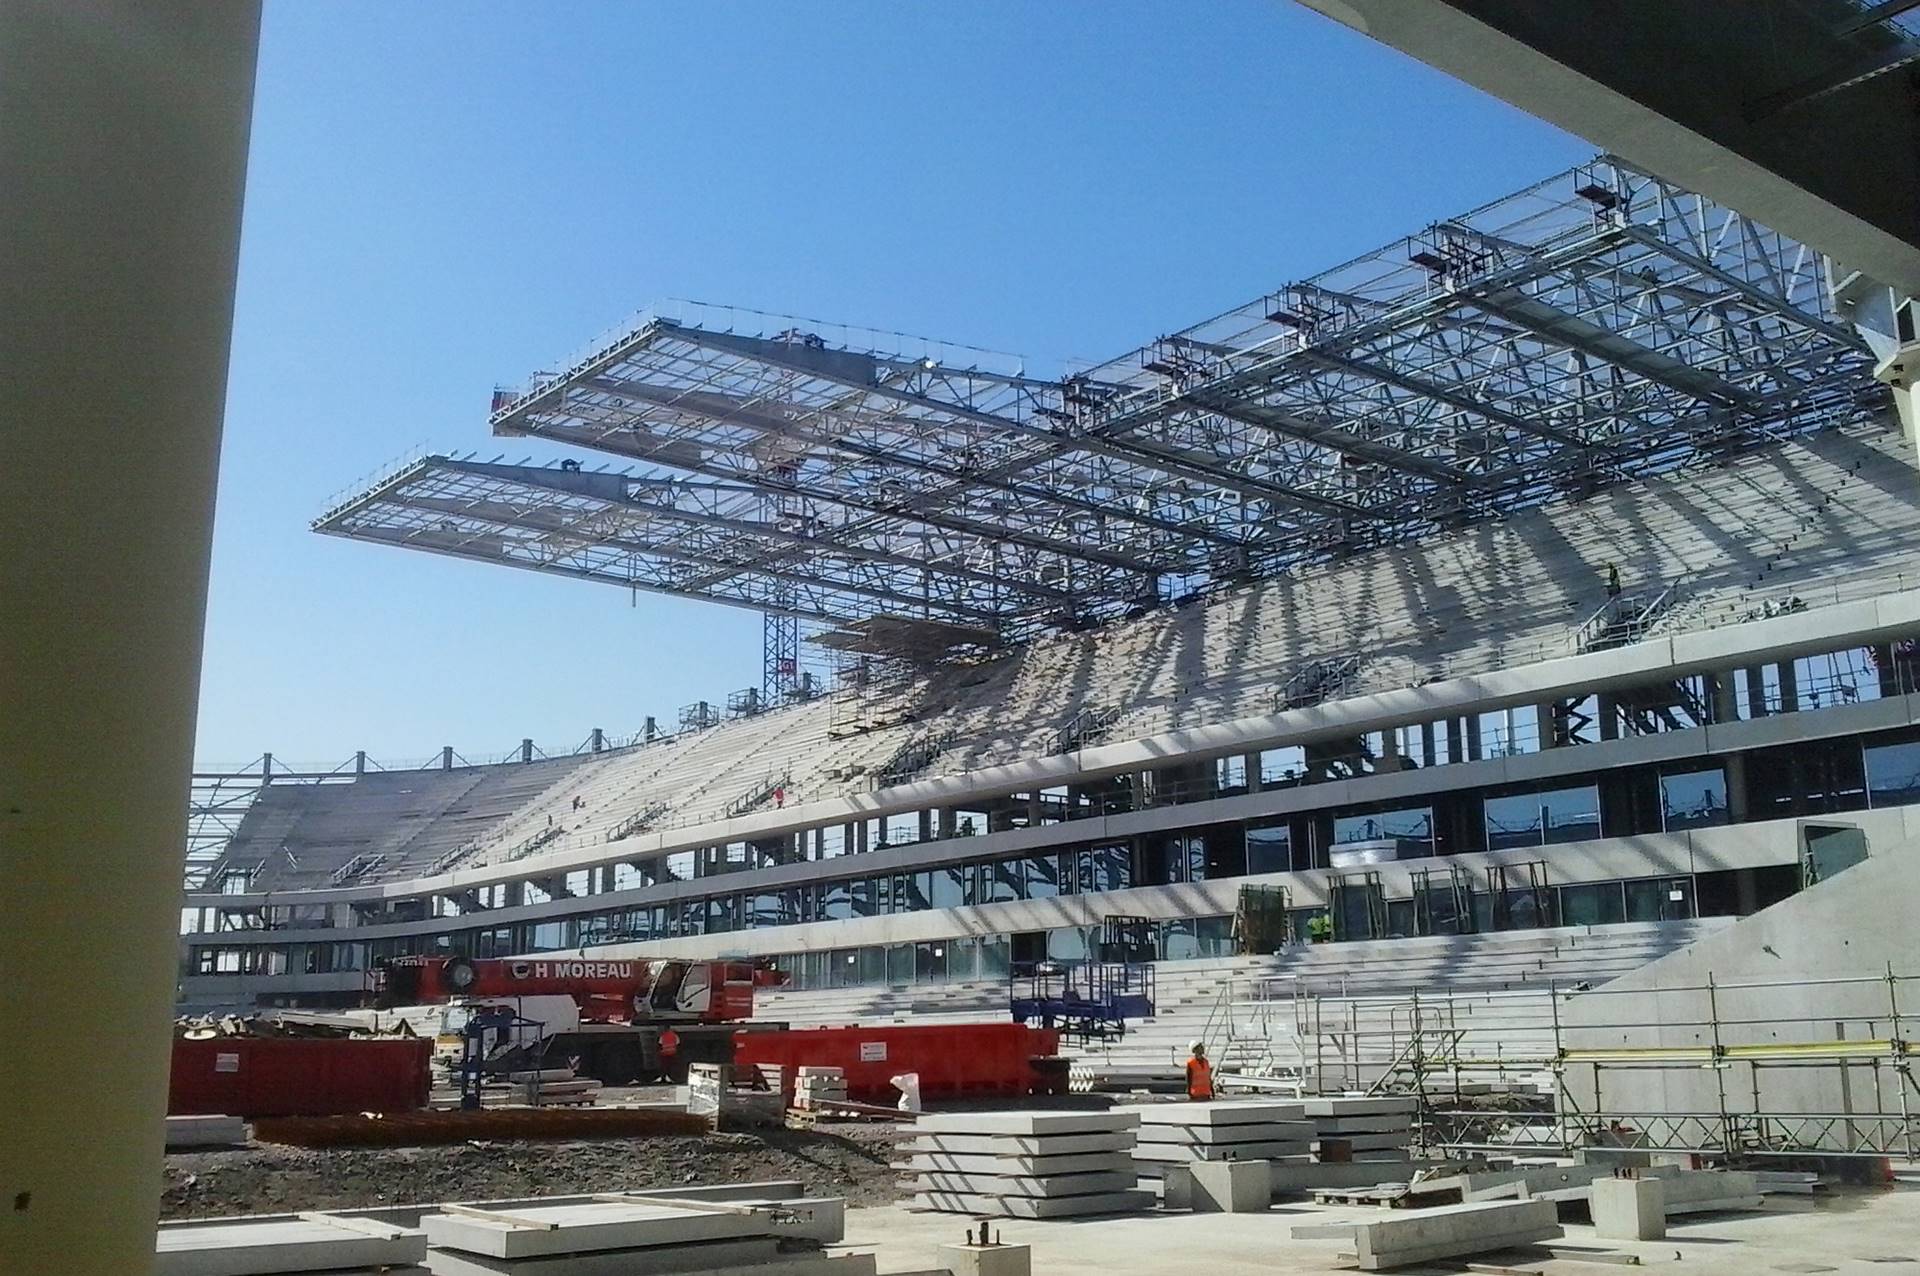 Le grand stade de Bordeaux